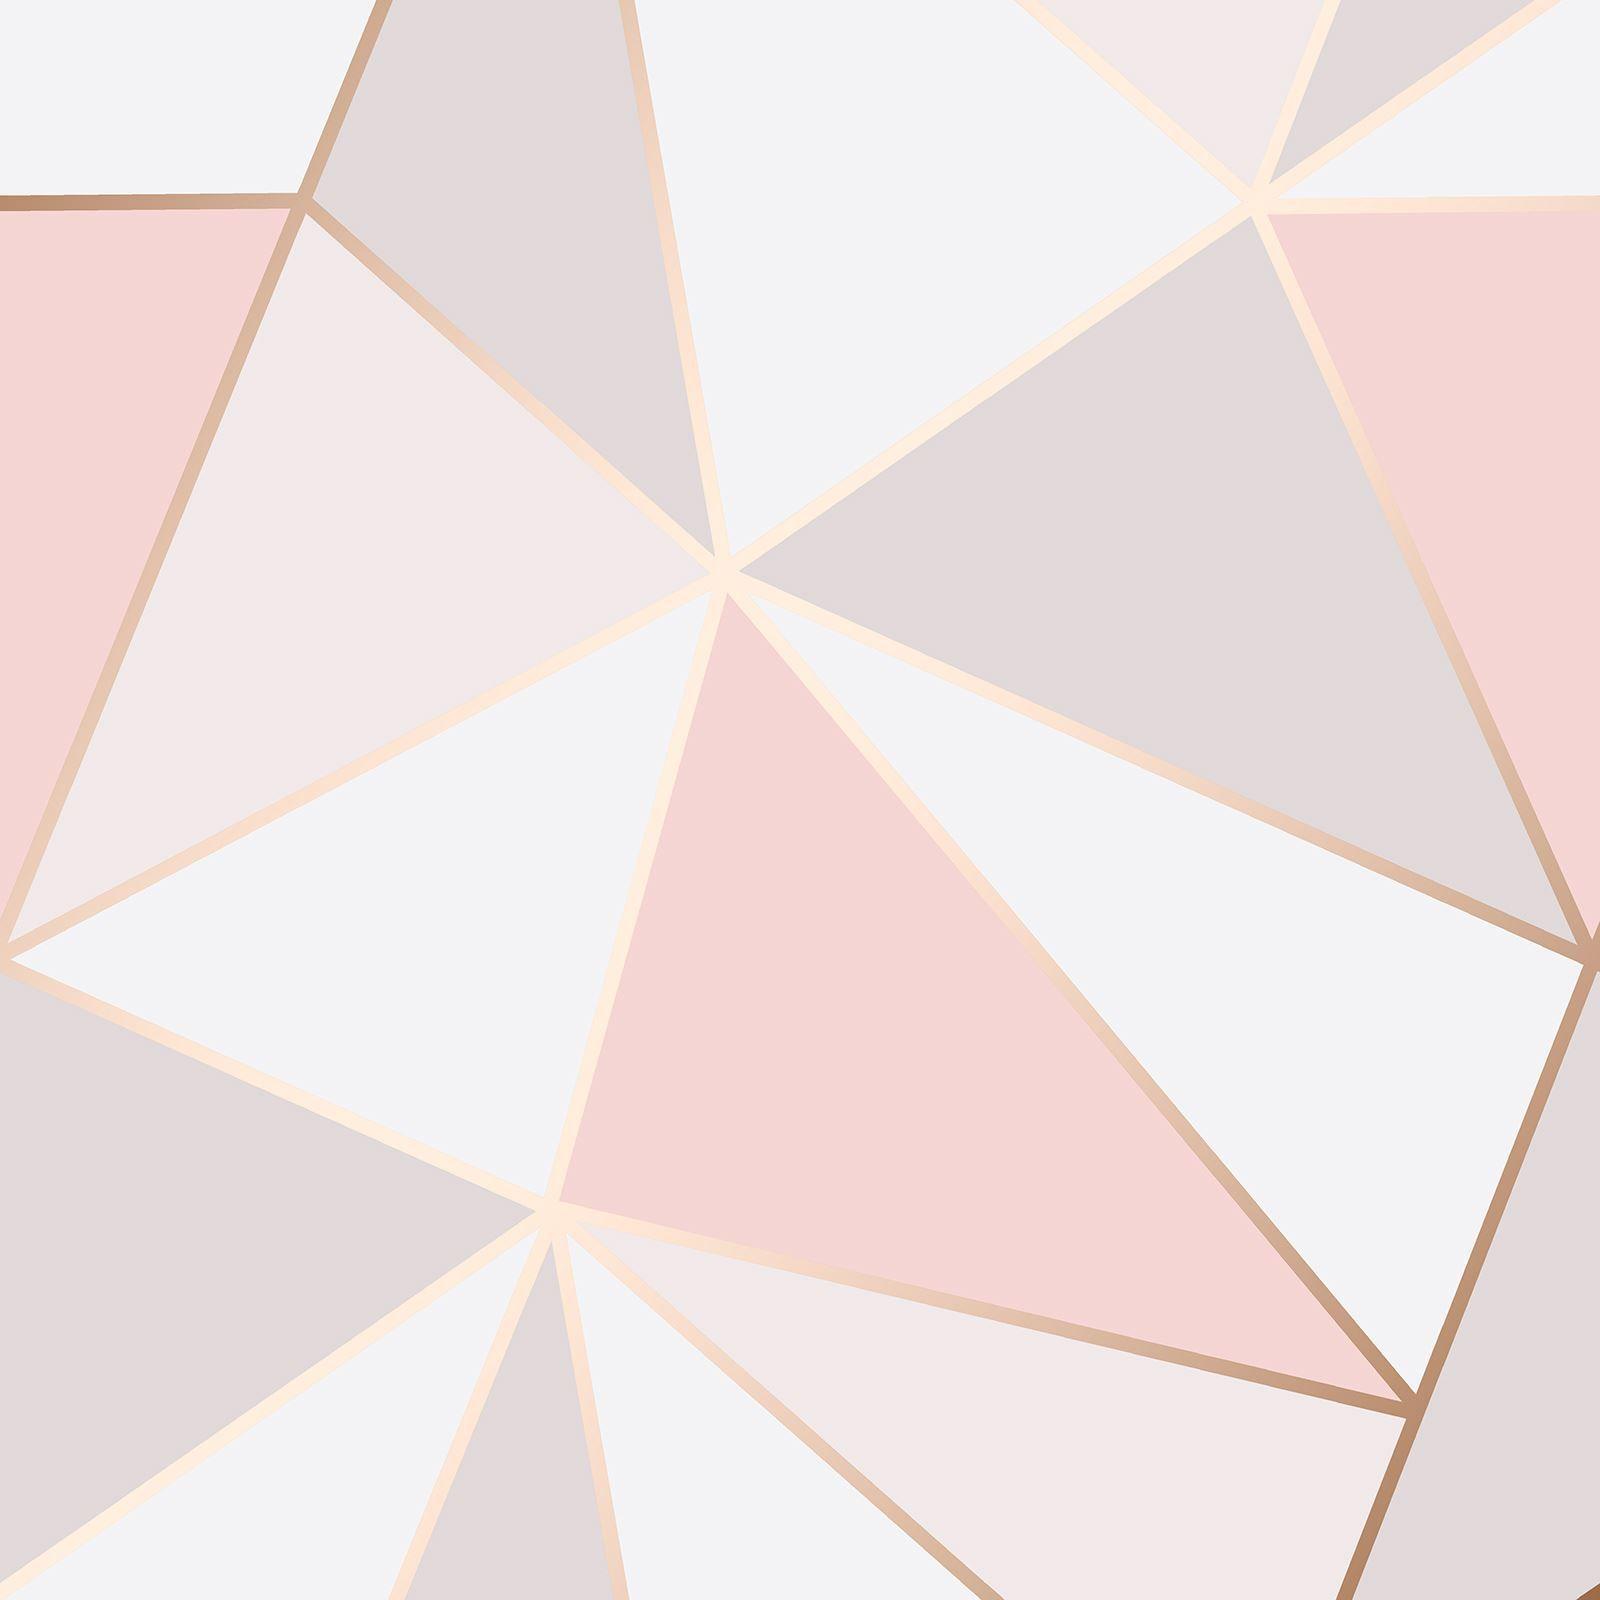 Blush PinkGrey Marble WallpaperGeometric TriangleChantilly Debona 5013 